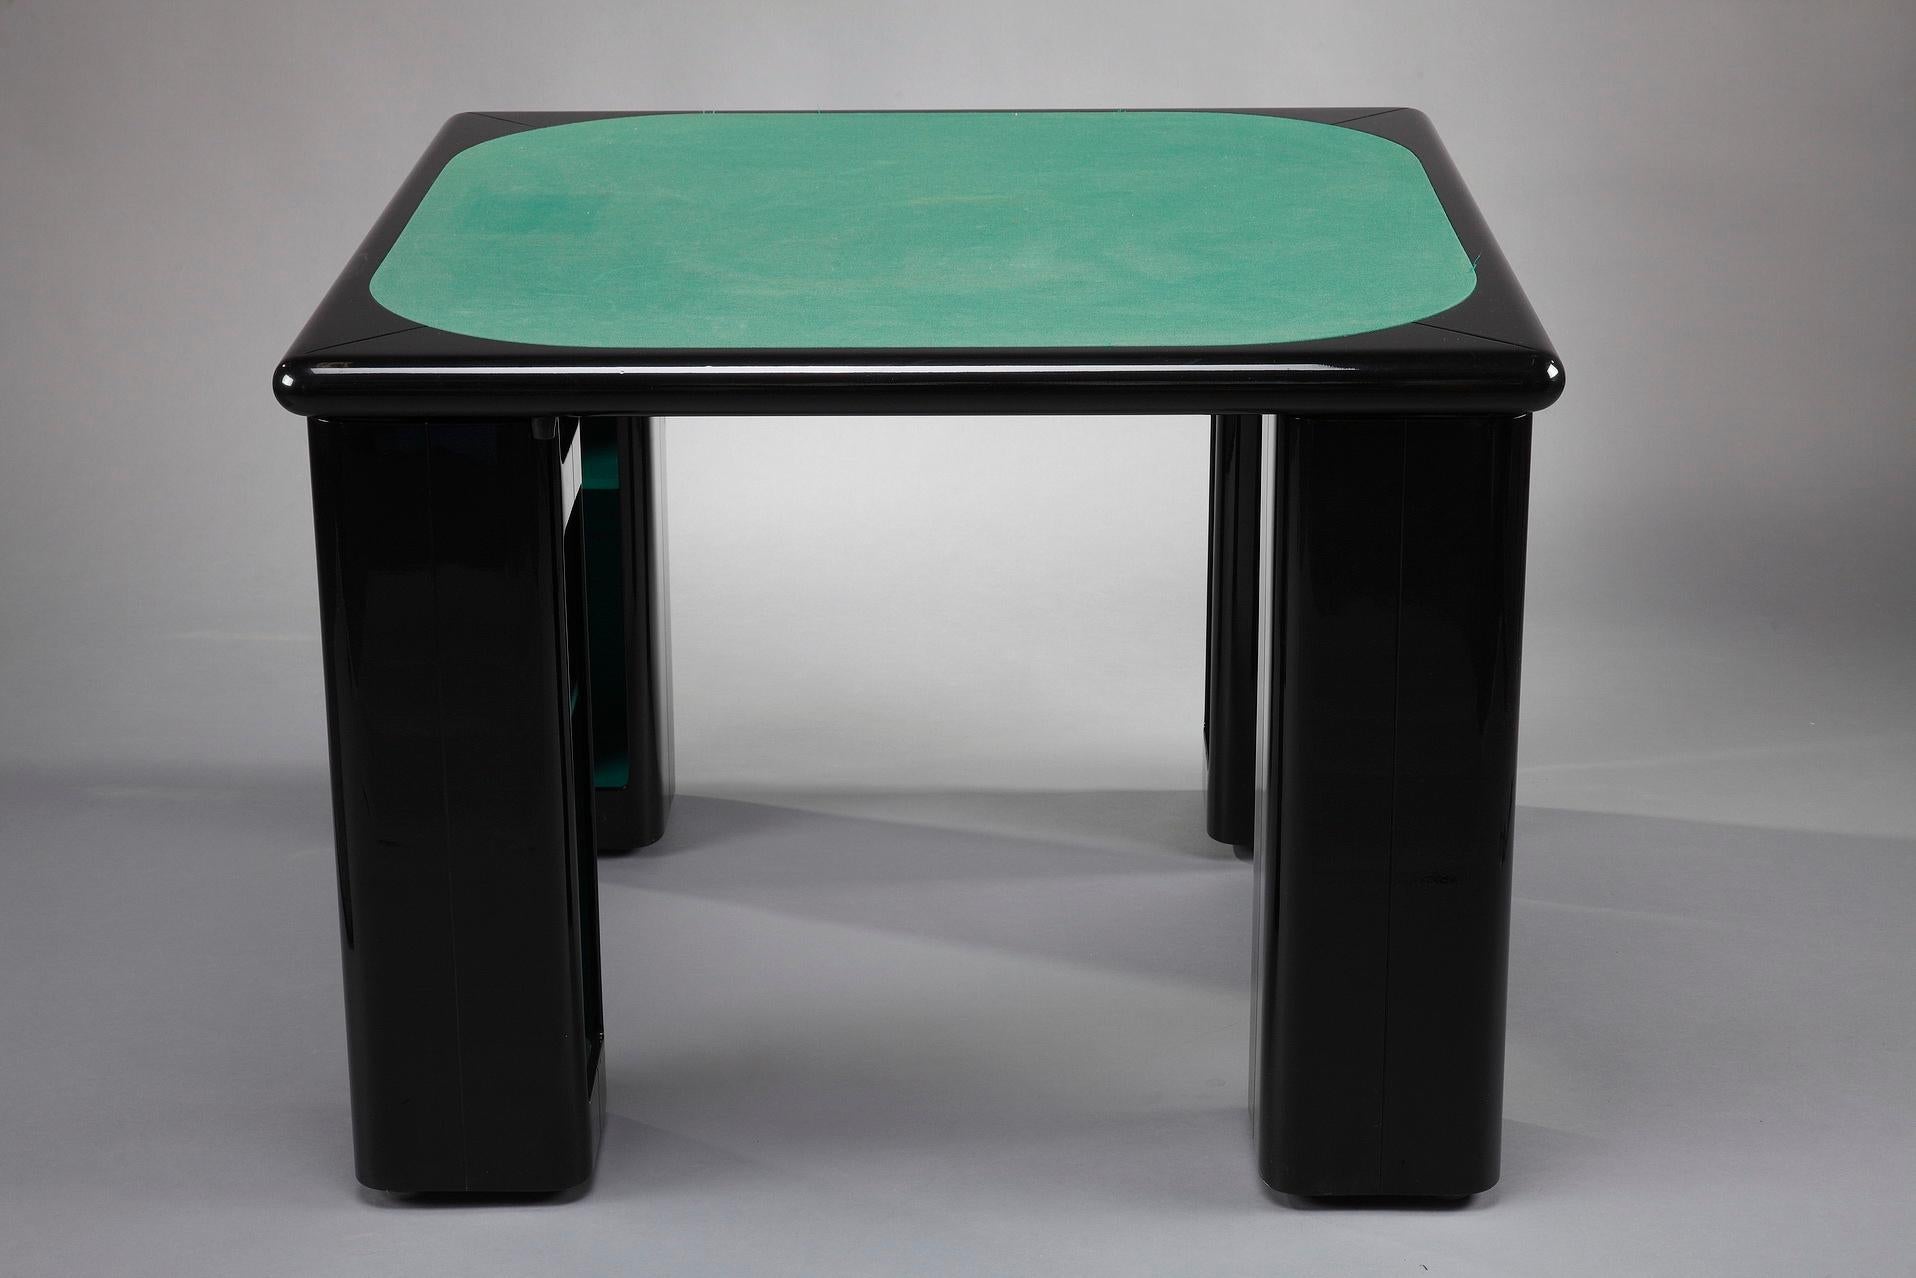 Italienischer Spieltisch für Bridge, Karten und Poker von Pierluigi Molinari (Mailand, 1938) für Pozzi Milano. Struktur aus lackiertem Ebenholz. Die vier würfelförmigen Beine lassen sich um ein verchromtes Rohr drehen und geben so den Blick auf